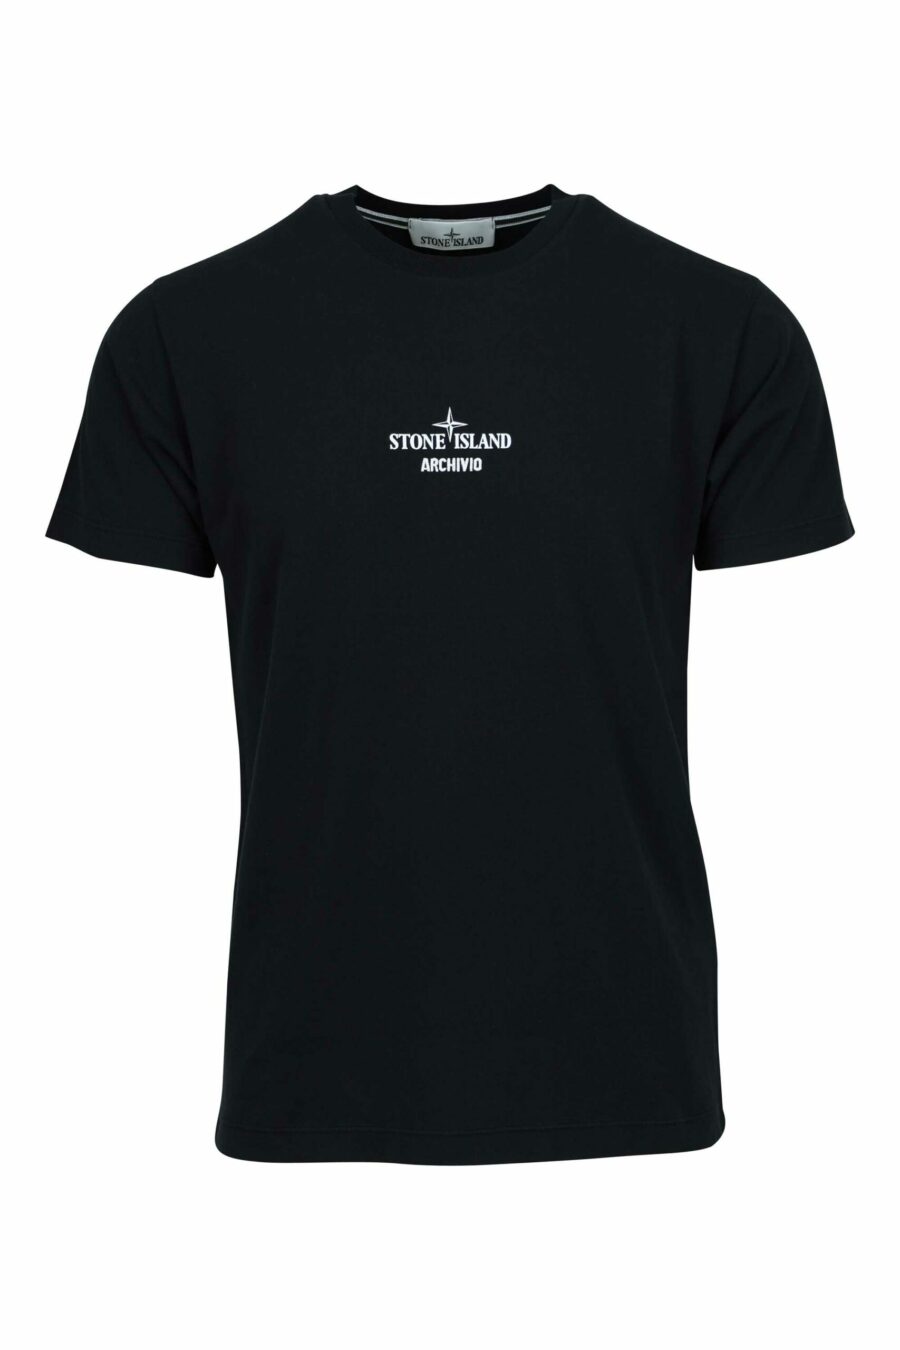 Schwarzes T-Shirt mit zentriertem "archivio"-Mini-Logo - 8052572924798 skaliert